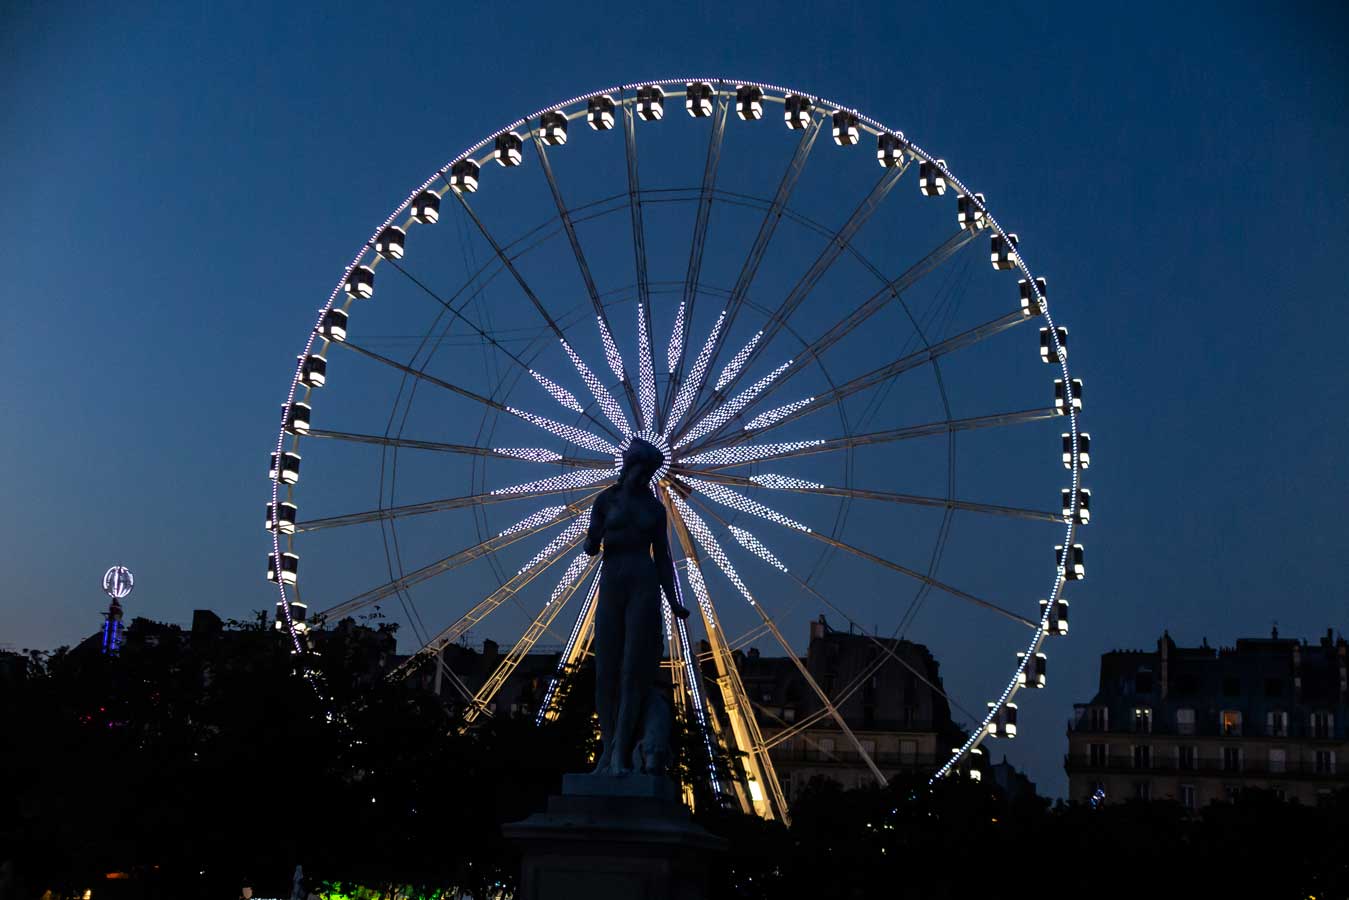 Imagen de una feria al caer la noche. La presencia de una estatua a contraluz, contrasta con la estampa de la noria iluminada al fondo